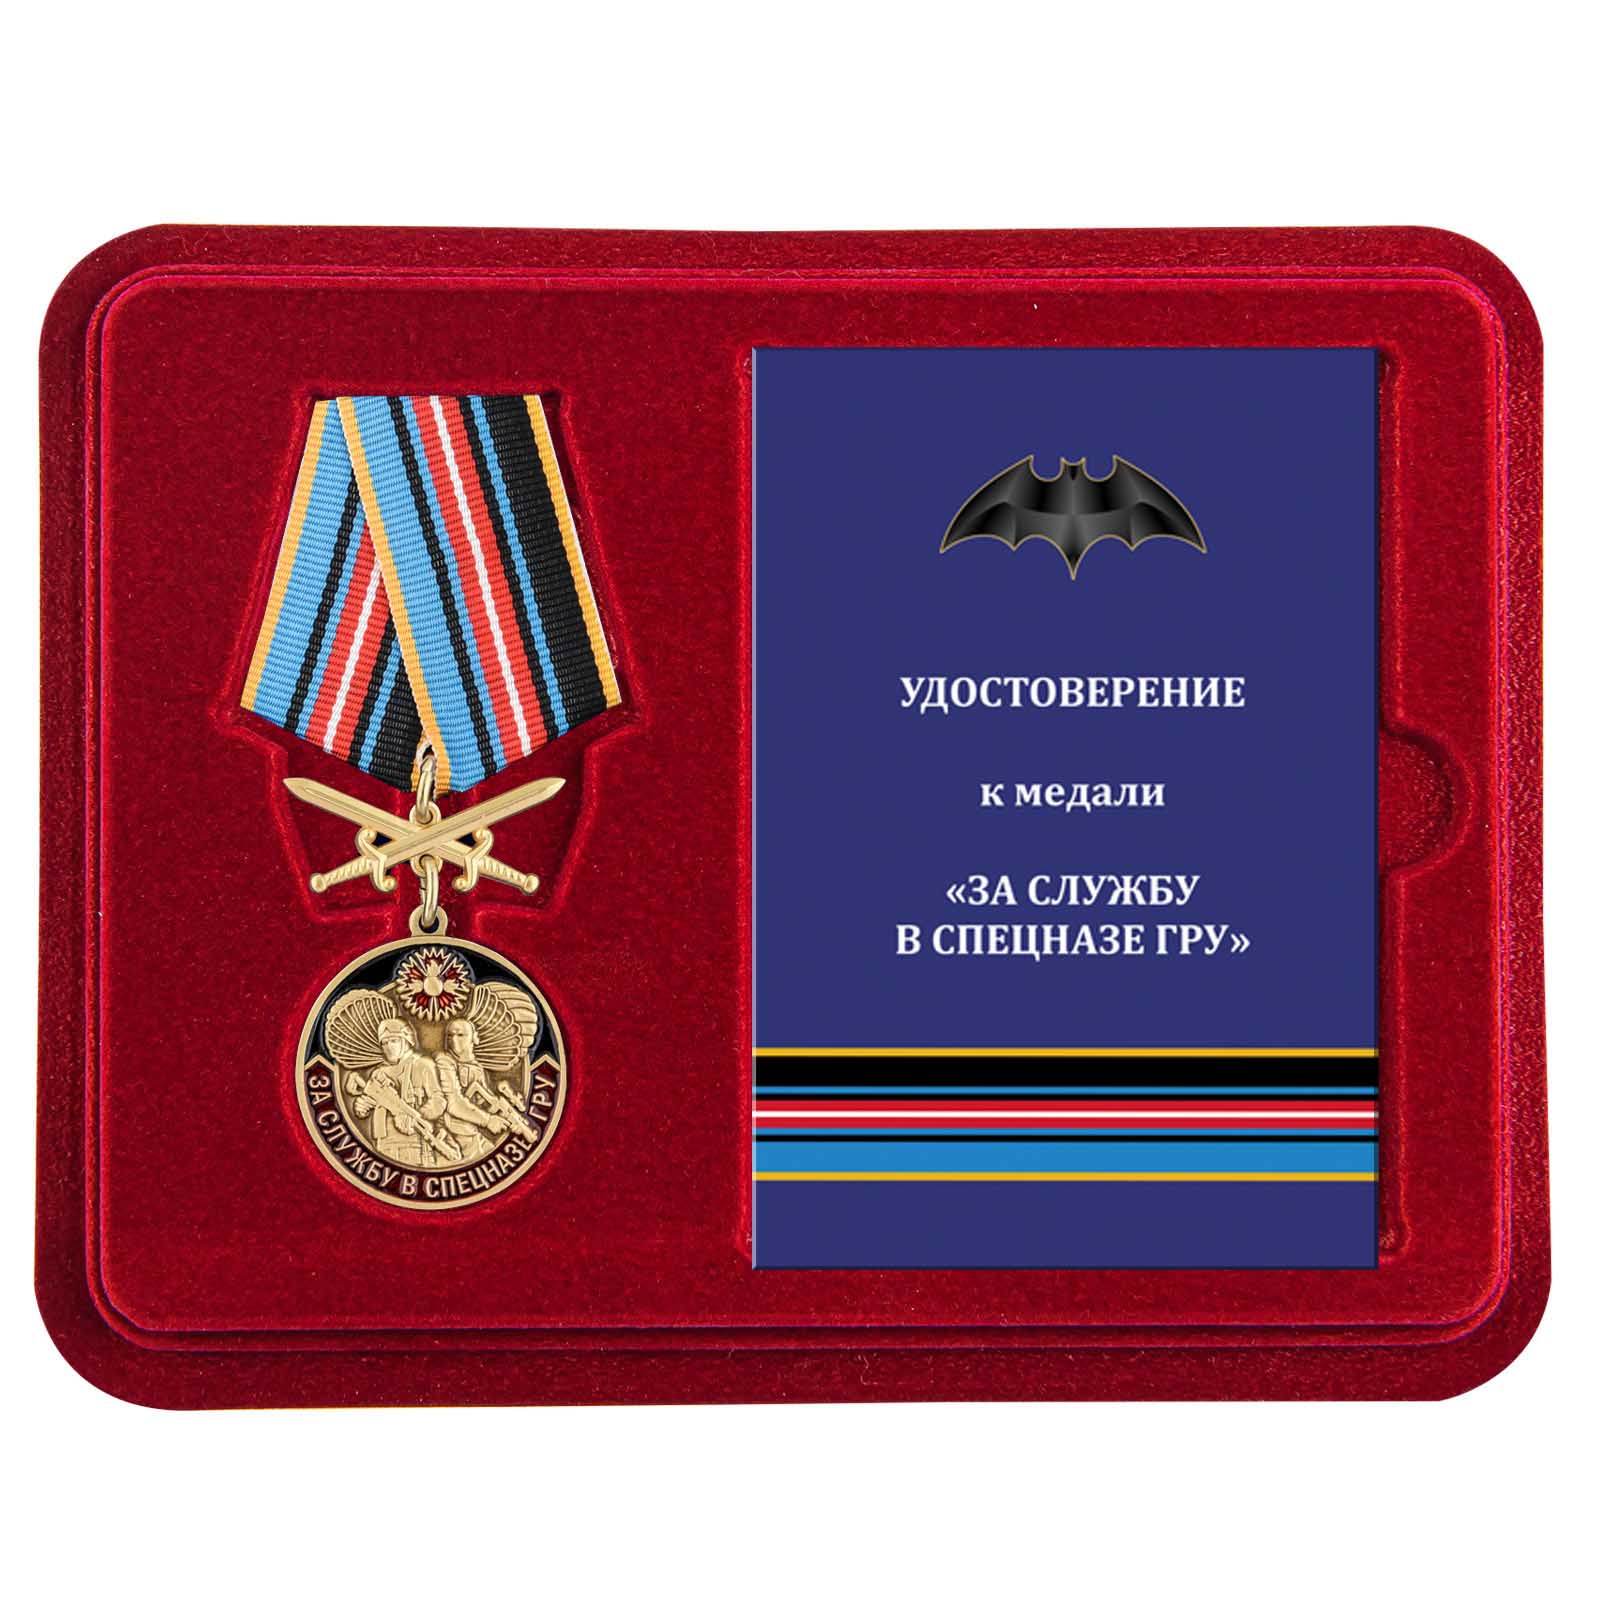 Медаль "За службу в спецназе ГРУ" в футляре с удостоверением